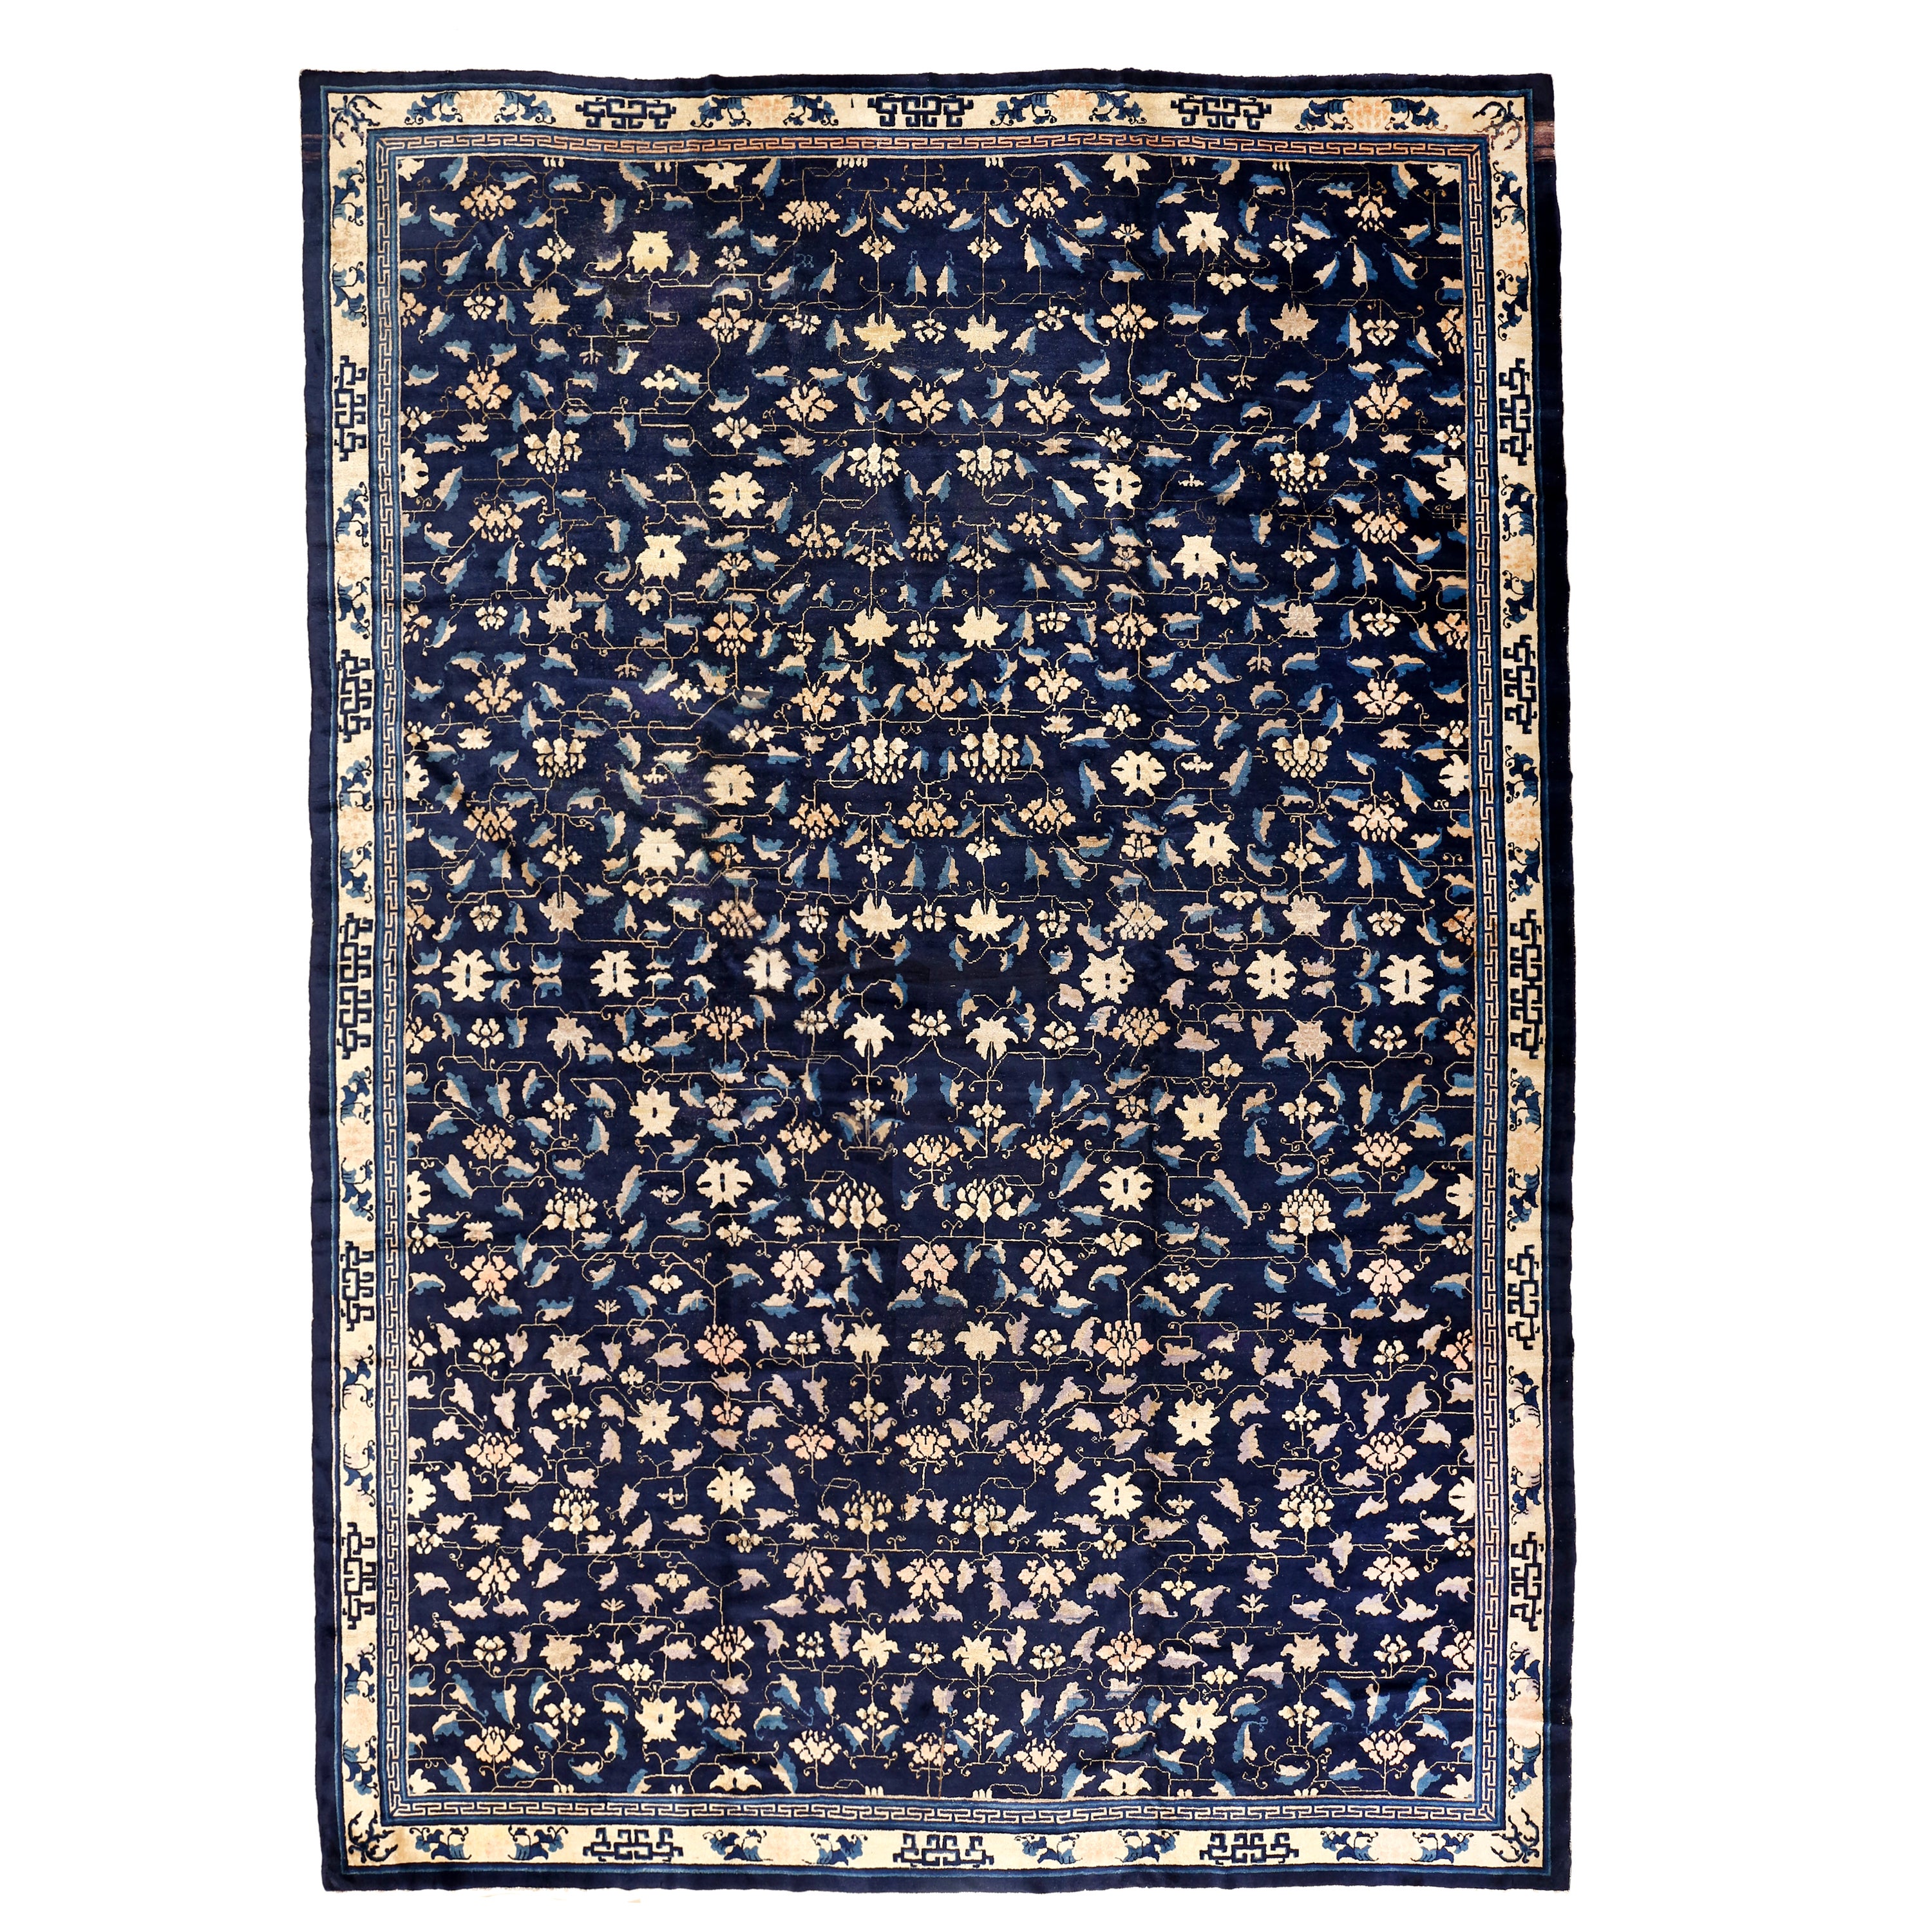 Fine tapis chinois pékinois ancien bleu avec fleurs de lotus en volutes